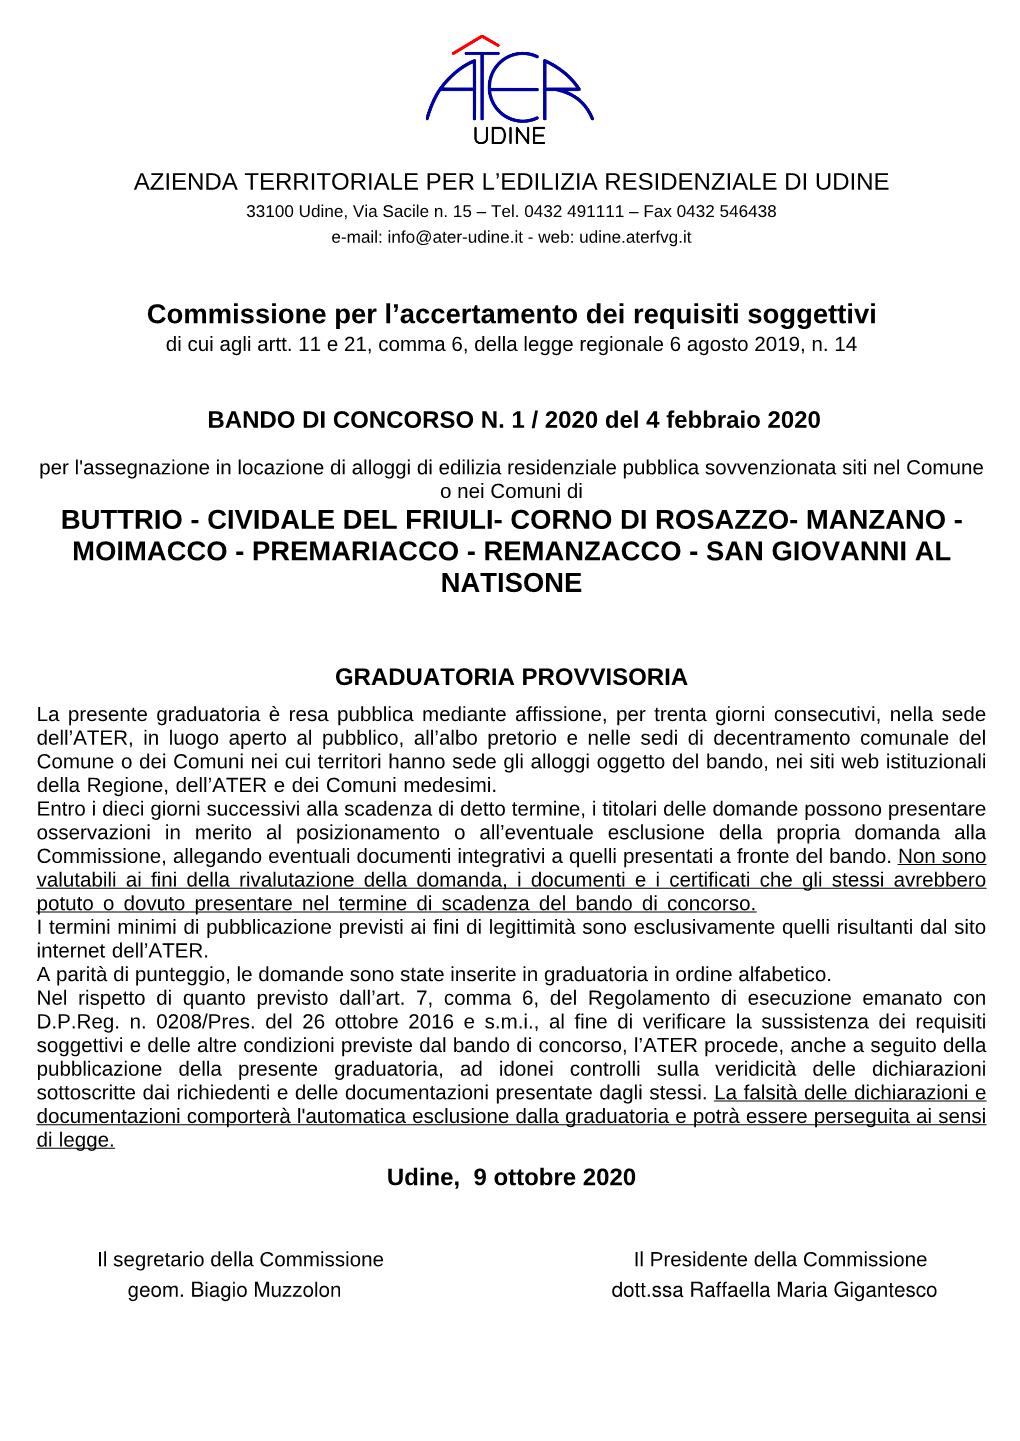 Buttrio - Cividale Del Friuli- Corno Di Rosazzo- Manzano - Moimacco - Premariacco - Remanzacco - San Giovanni Al Natisone